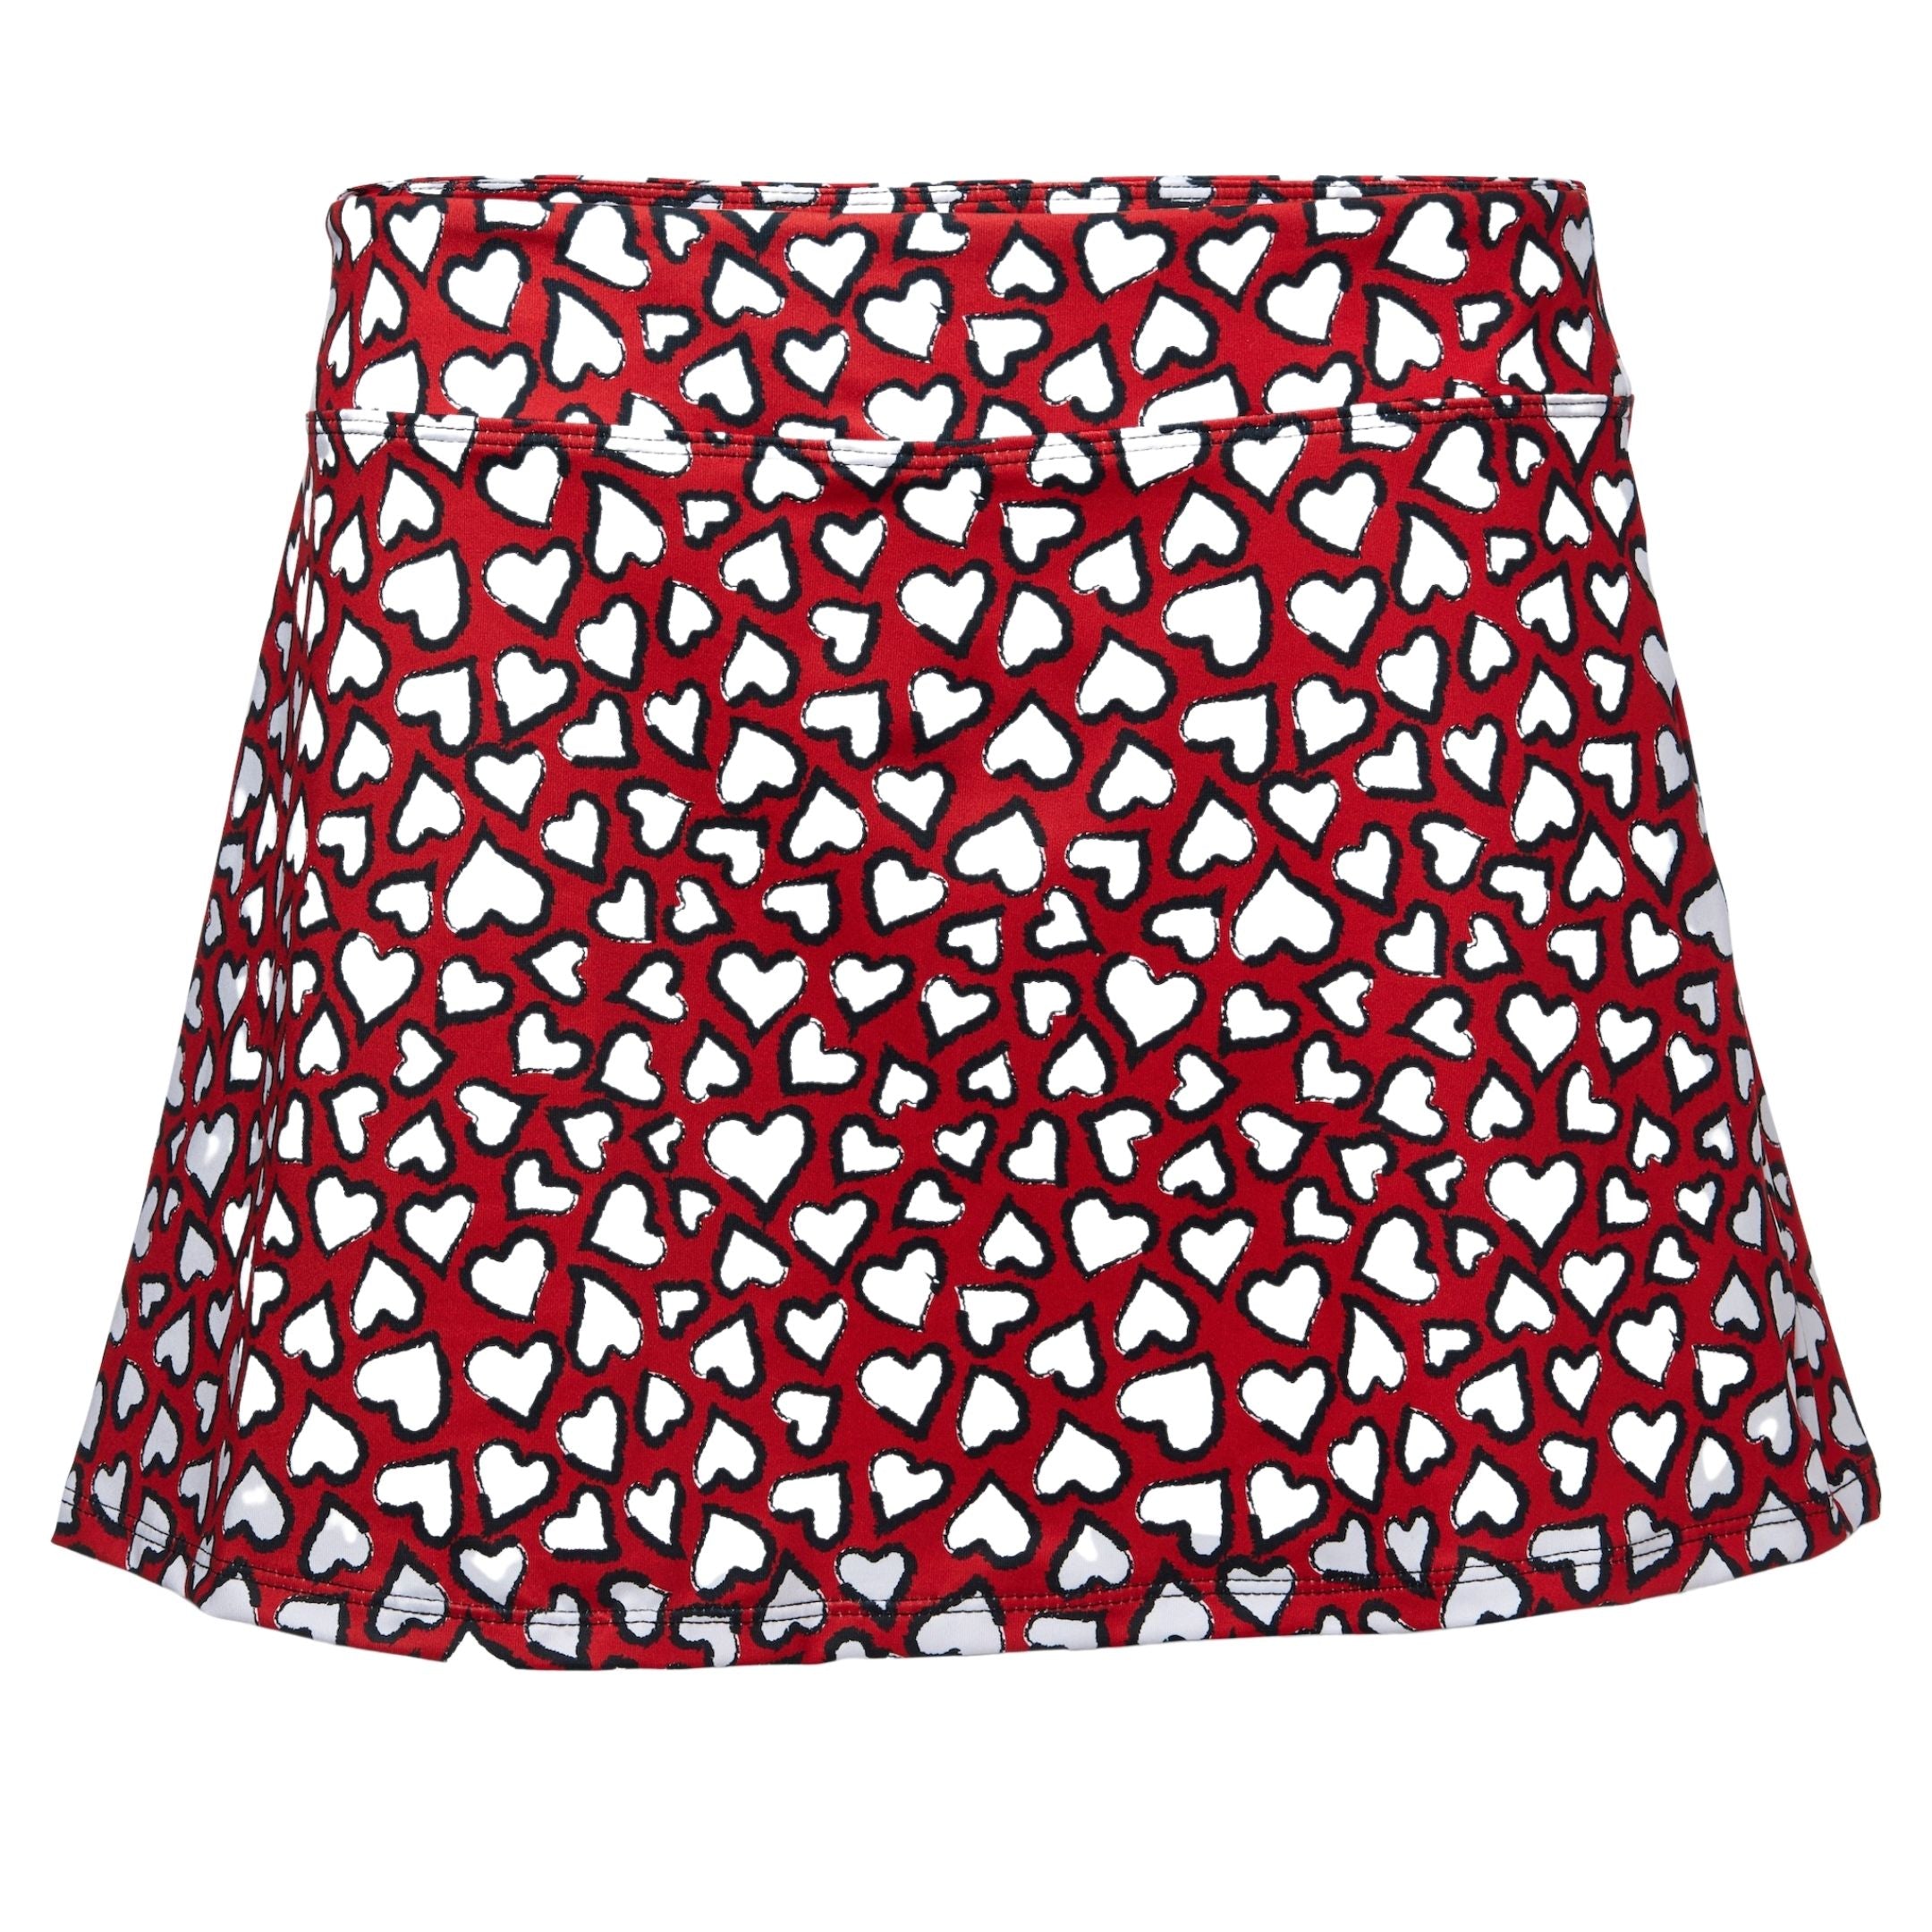 Sassy Skirt-Red Hot Love